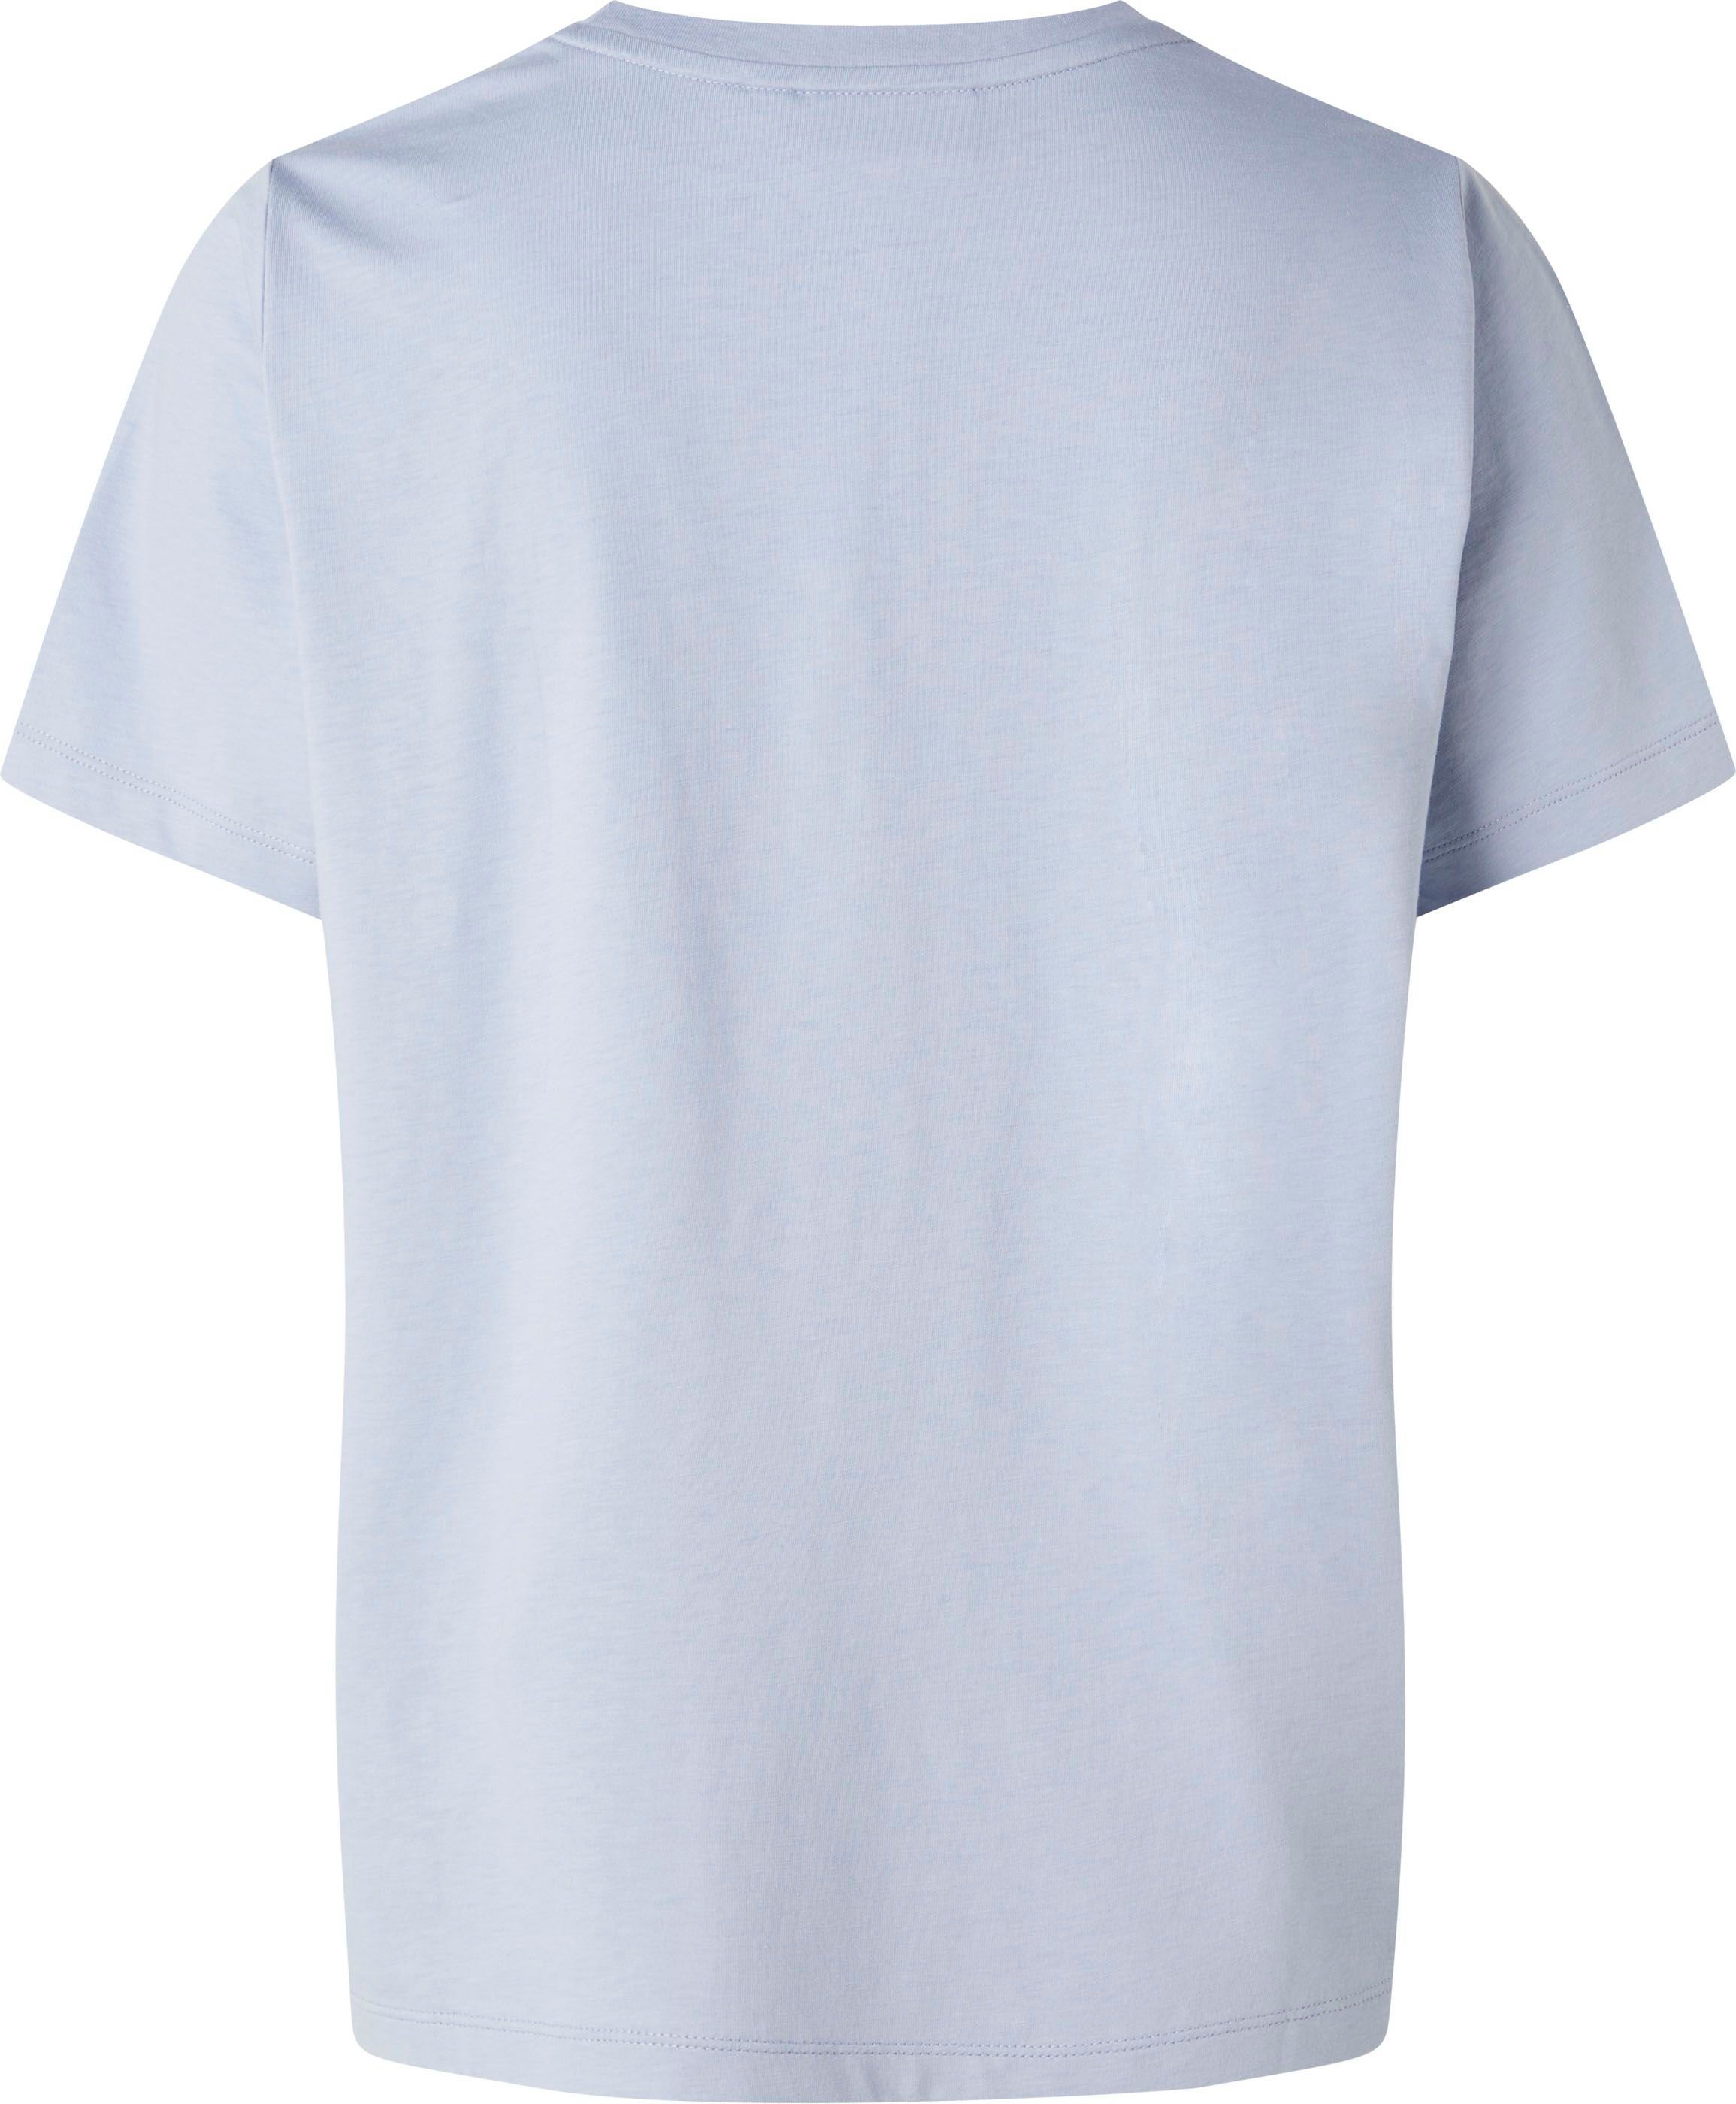 T-Shirt T-SHIRT Calvin aus hellblau MICRO Baumwolle LOGO Klein reiner